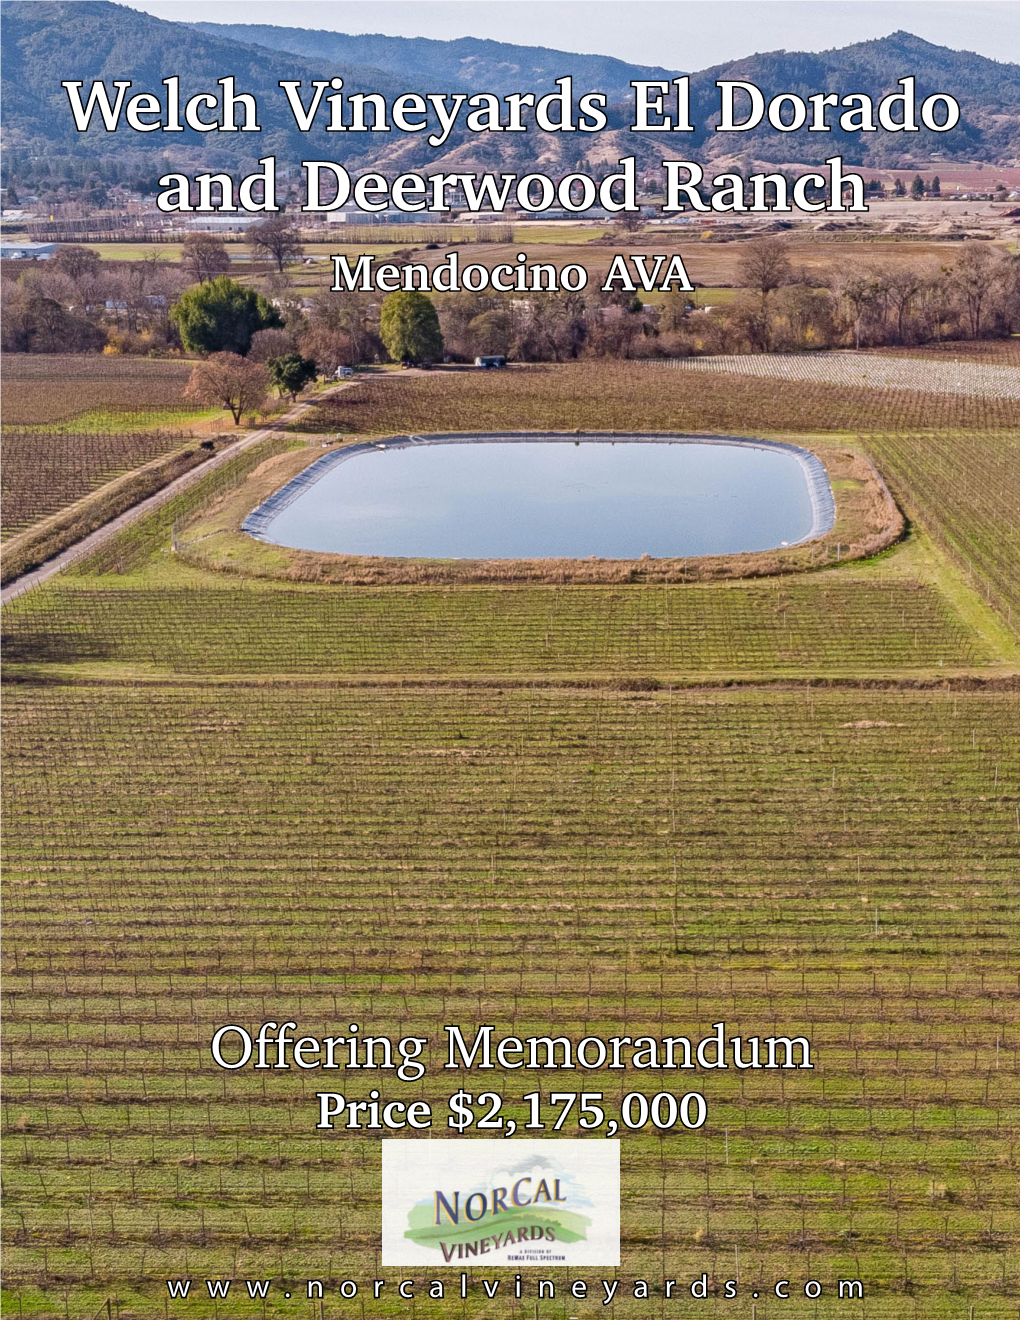 Welch Vineyards El Dorado and Deerwood Ranch Mendocino AVA